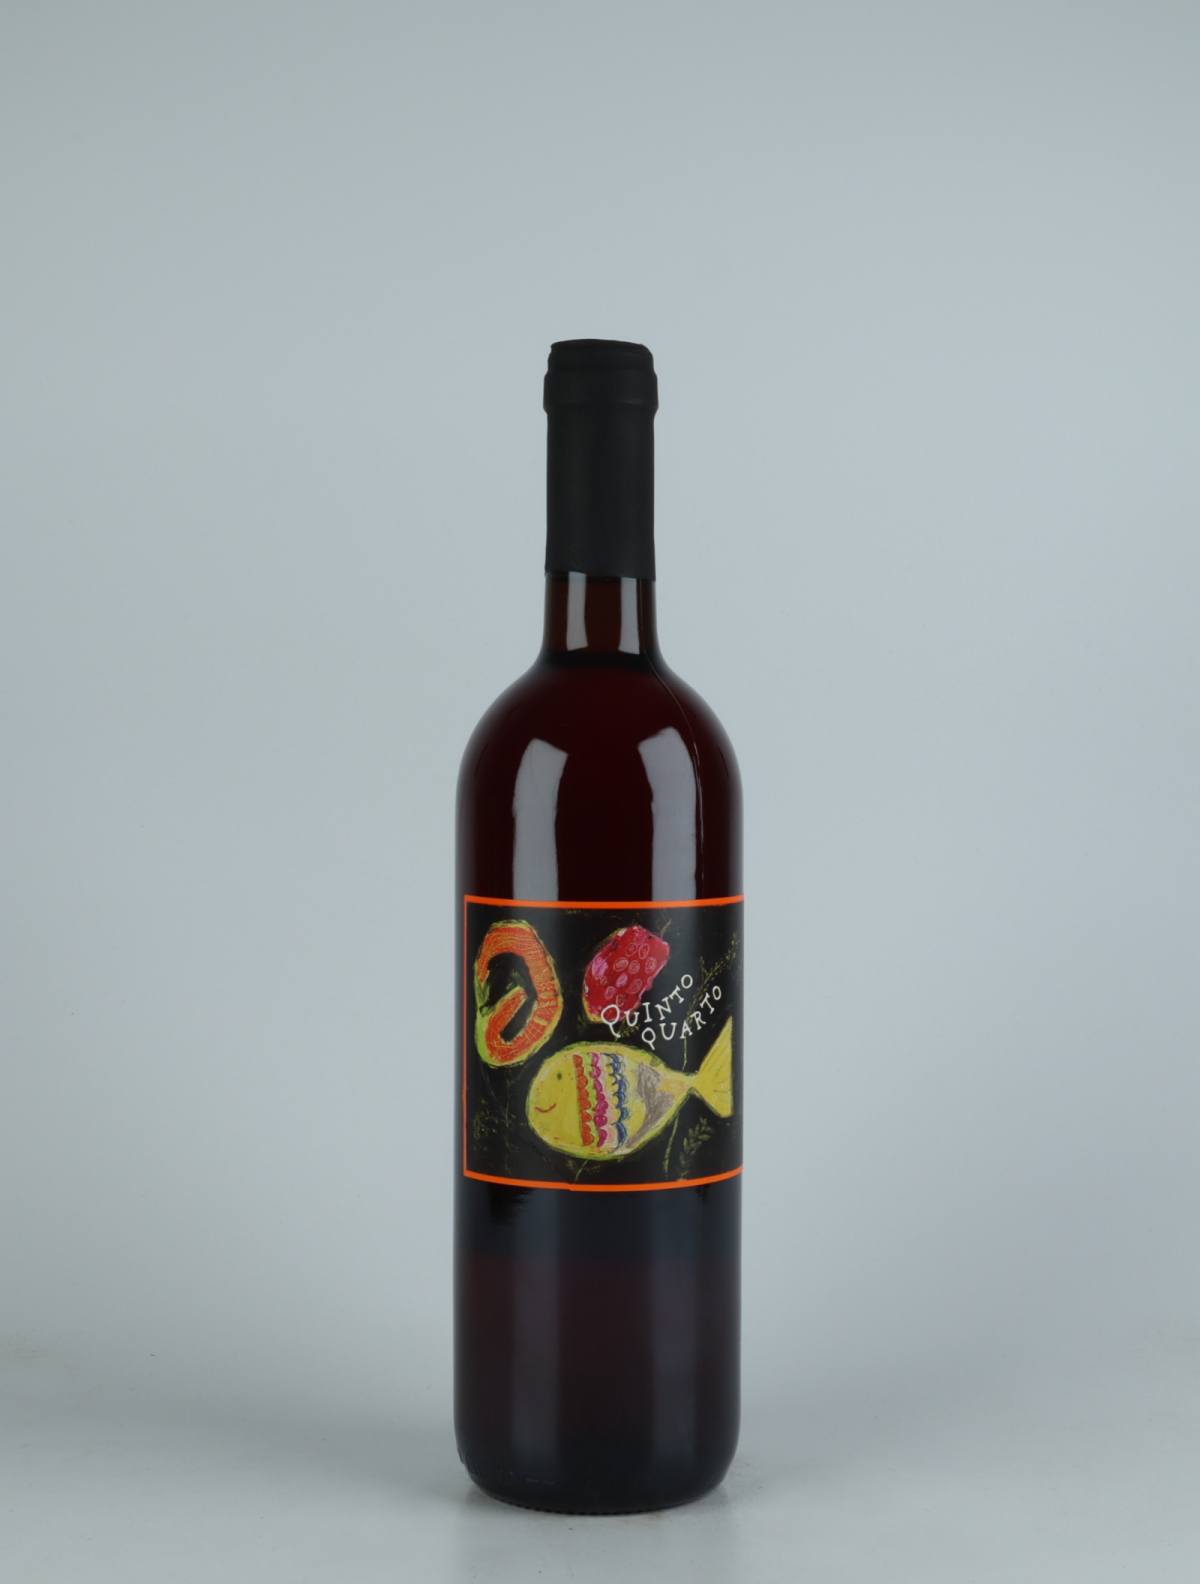 A bottle 2021 Quinto Quarto Bianco Sivi Orange wine from Franco Terpin, Friuli in Italy